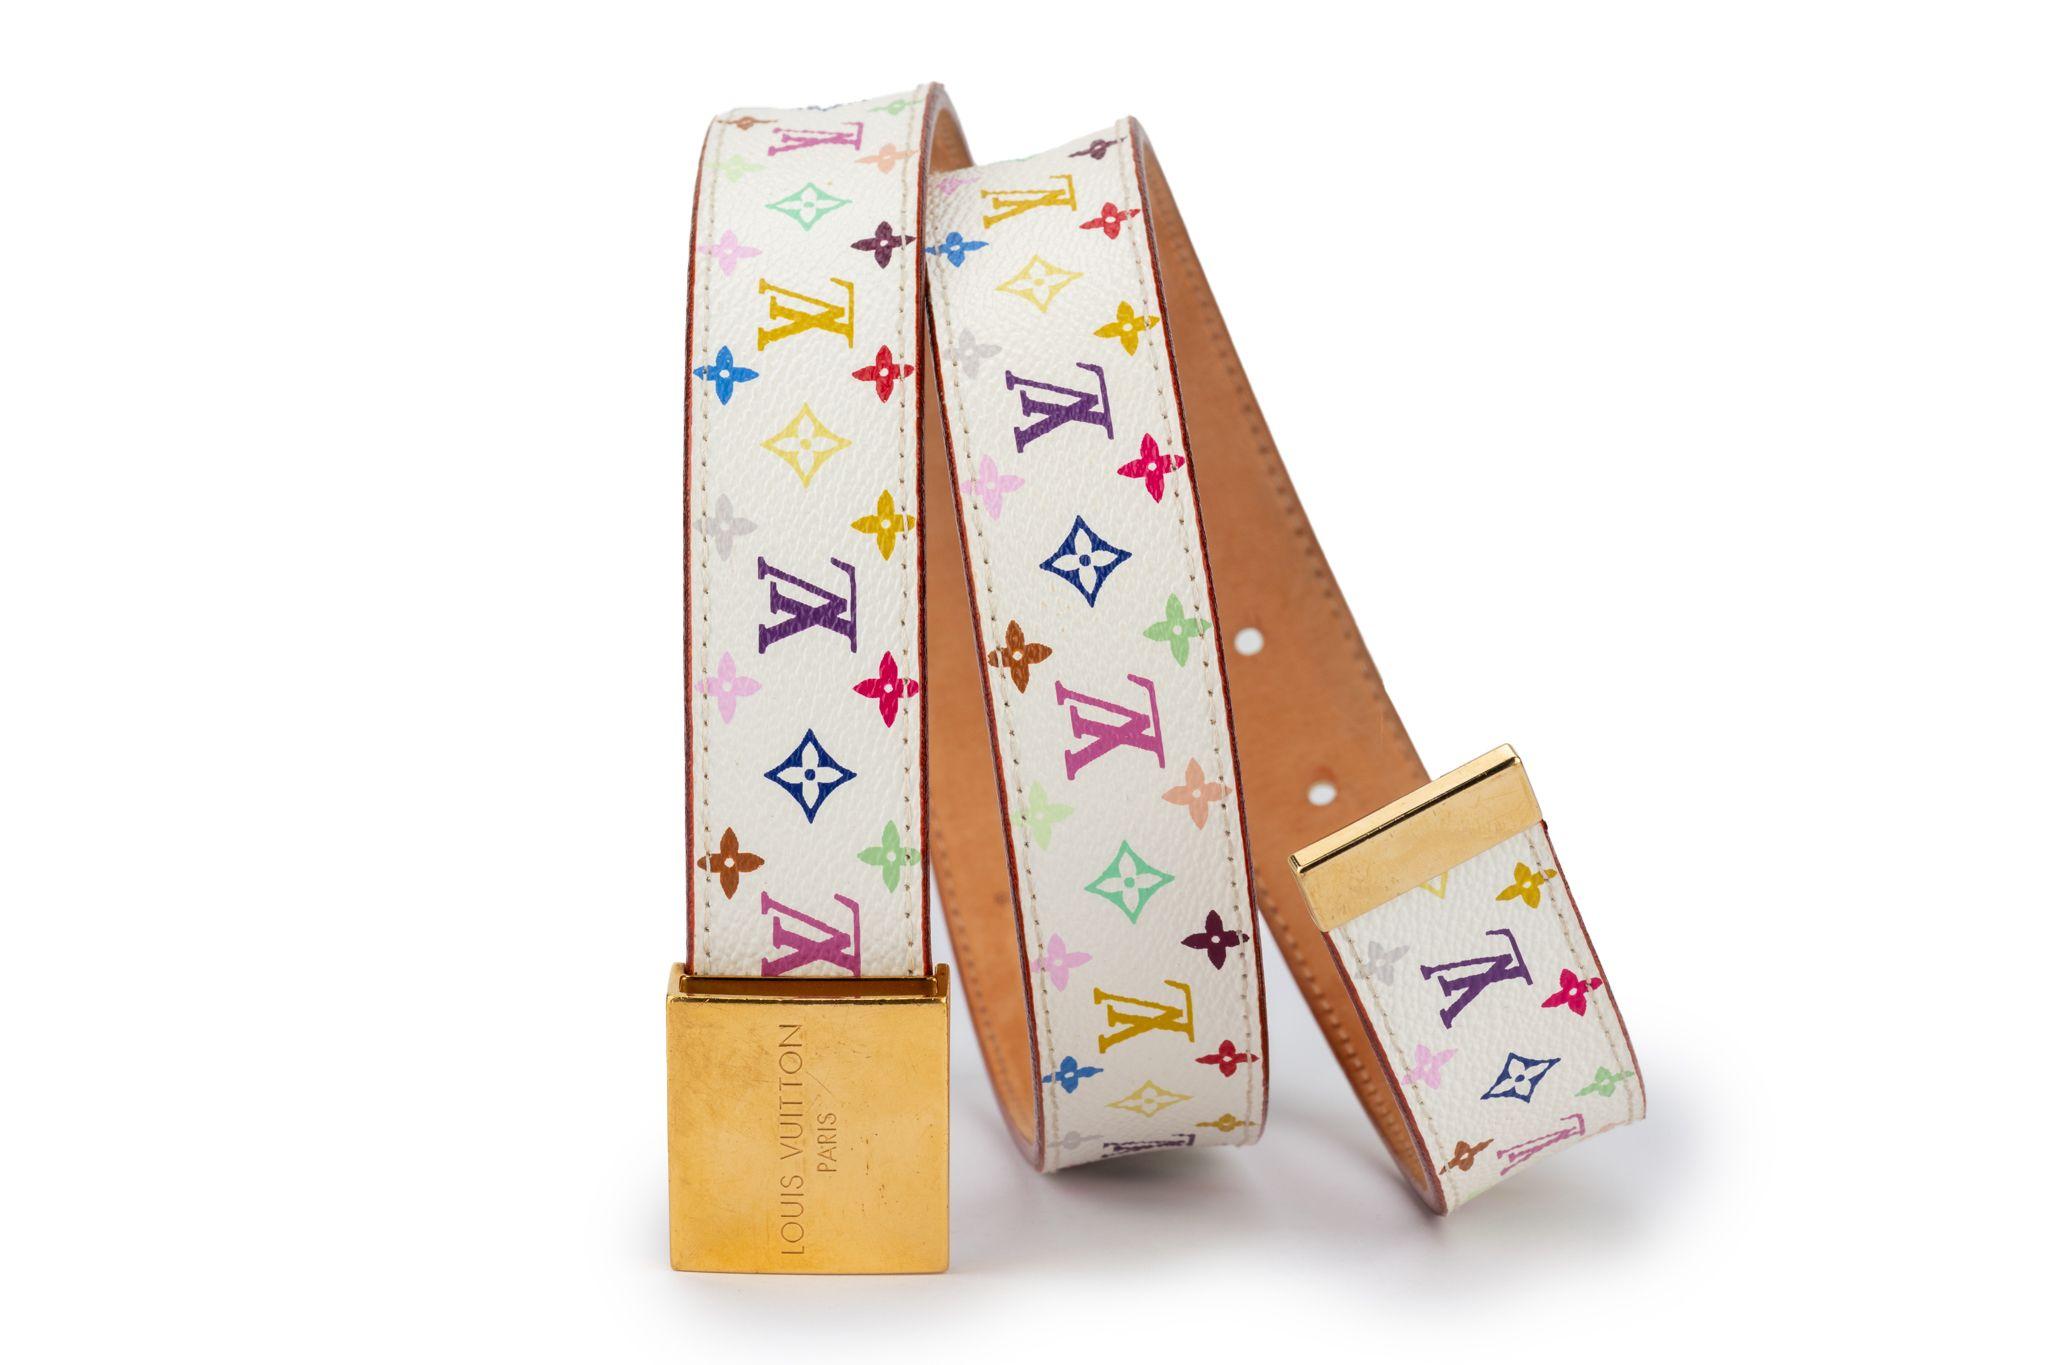 Collaborazione in edizione limitata di Louis Vuitton con Takashi Murakami nel 2003. Pelle bianca con stampa del logo multicolore, interno in pelle di vacchetta naturale, finiture in oro. Condizioni eccellenti. Viene fornito con la scatola originale.